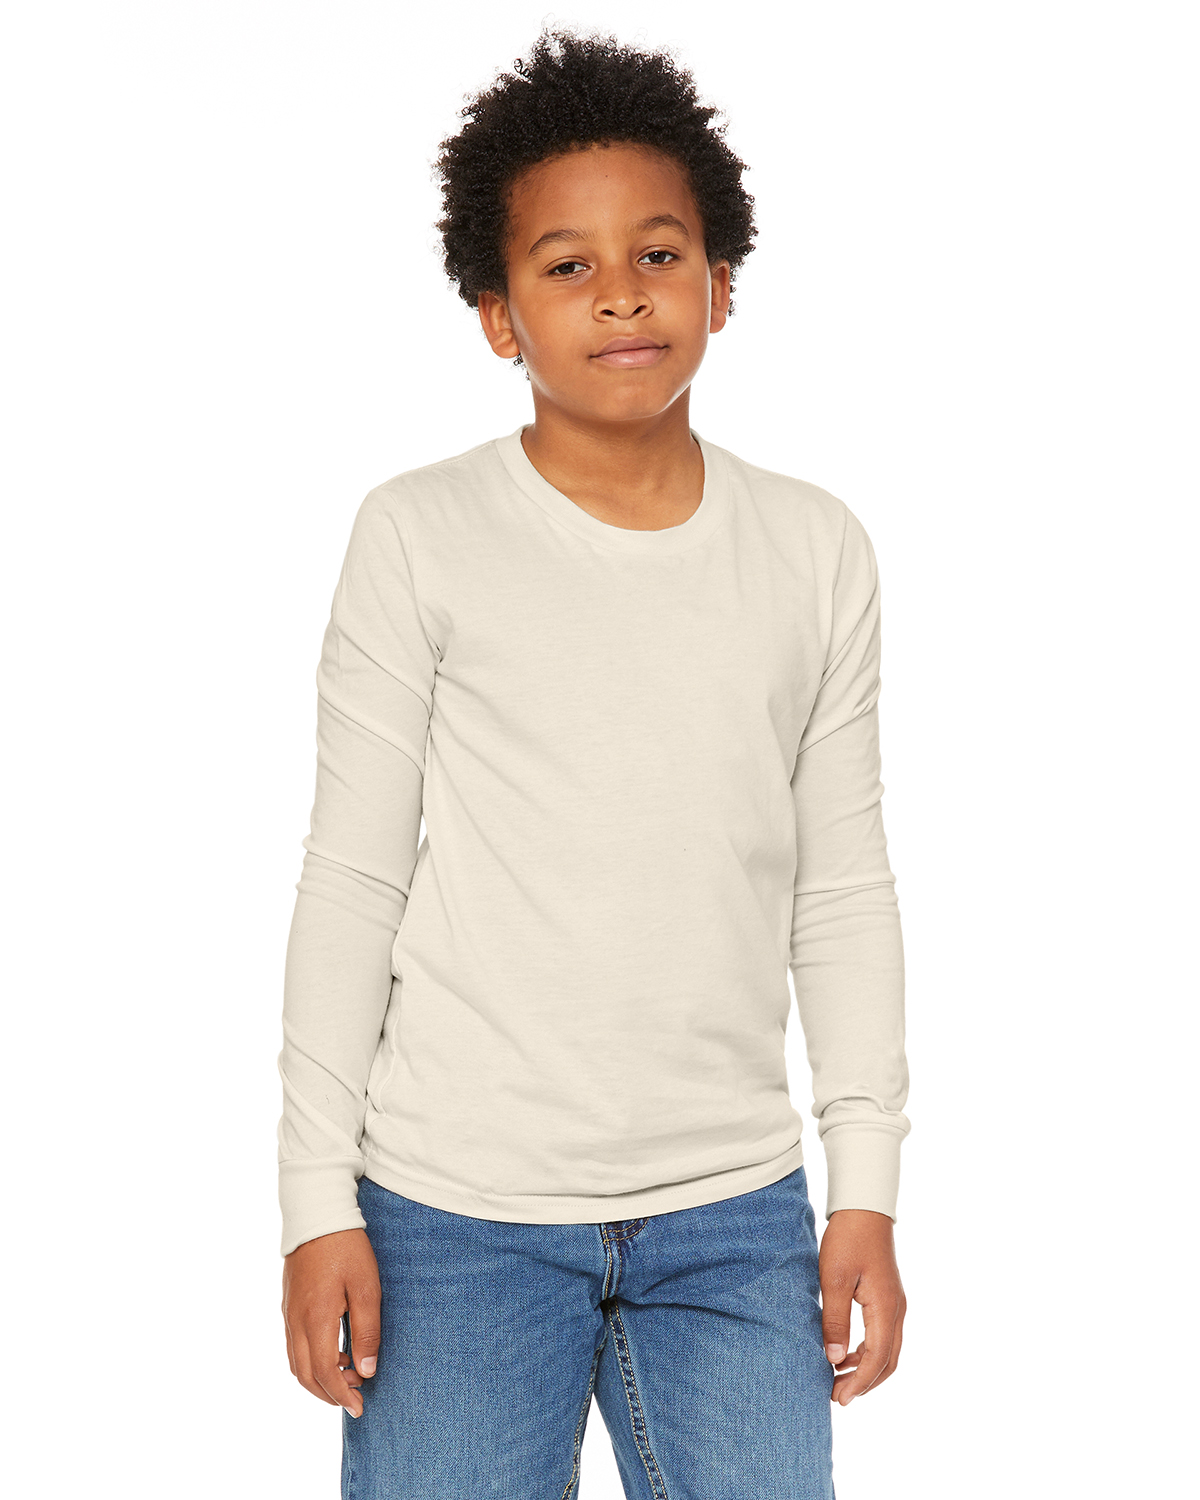 Ultra Cotton Long-Sleeve T-Shirt Gildan Boys 6.1 oz -IRISH GREE -S-12PK G240B 